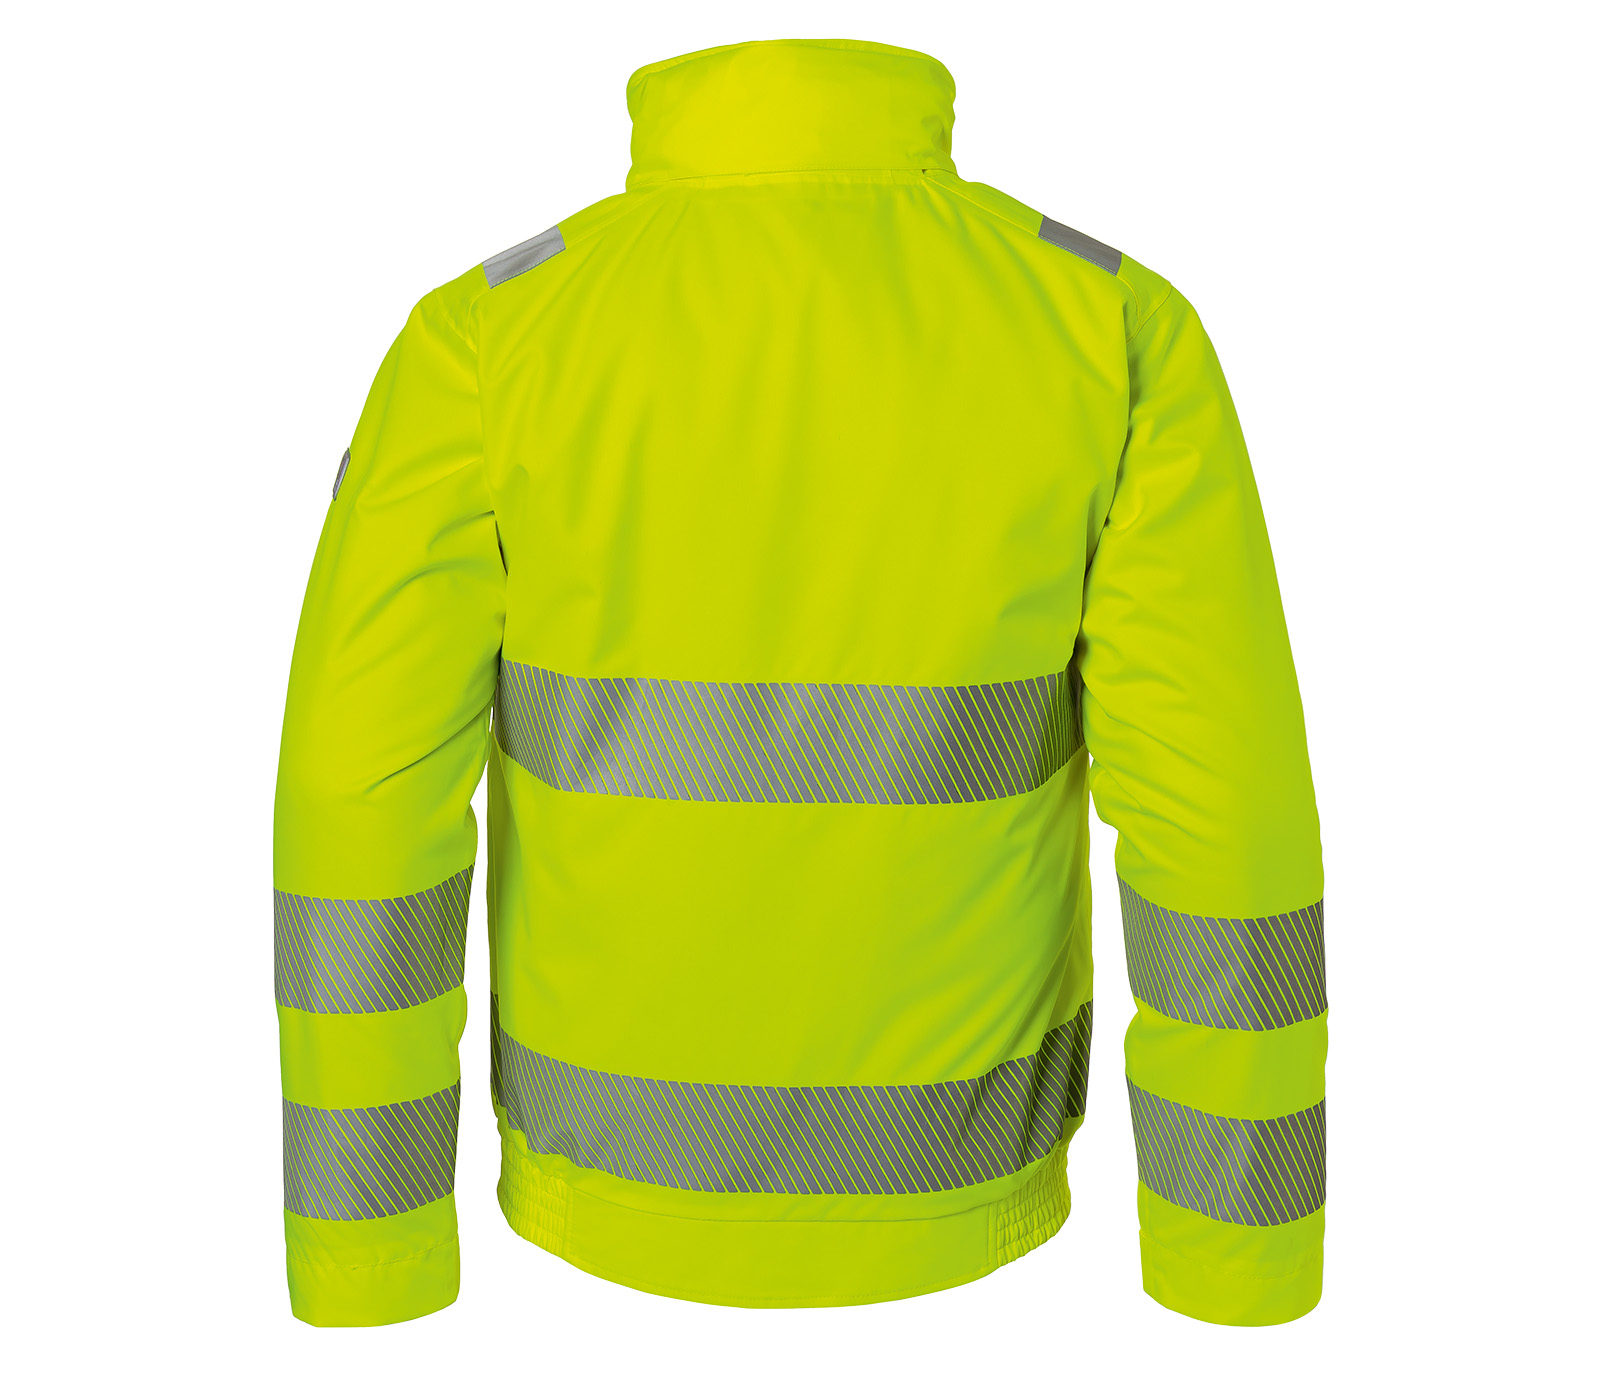 KÜBLER REFLECTIQ Bluza na pogodę PPE 2